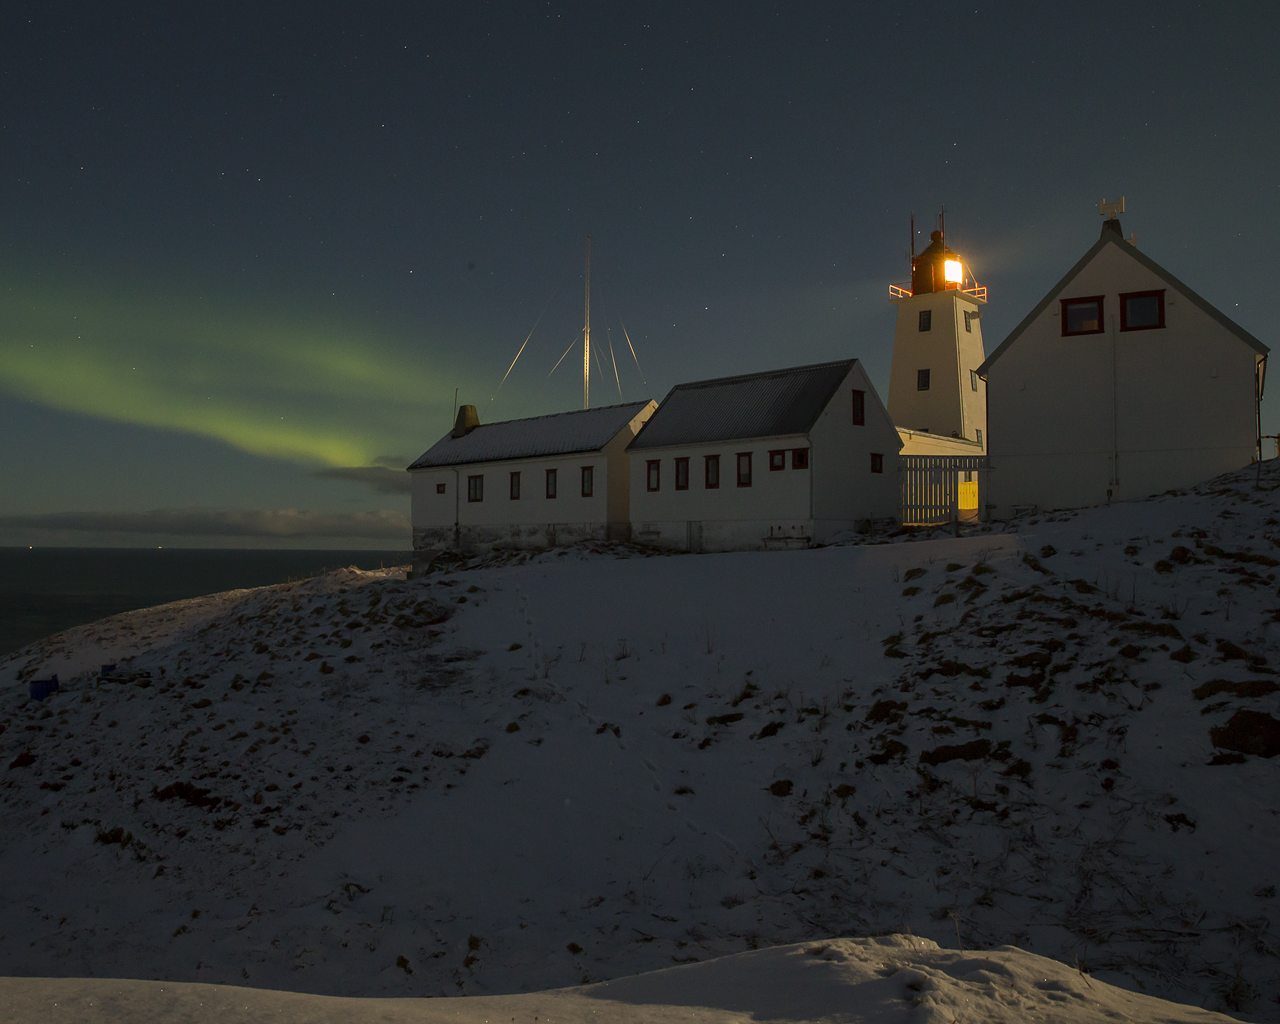 Hornöya norrsken aurora borealis  foto:Niclas Ahlberg